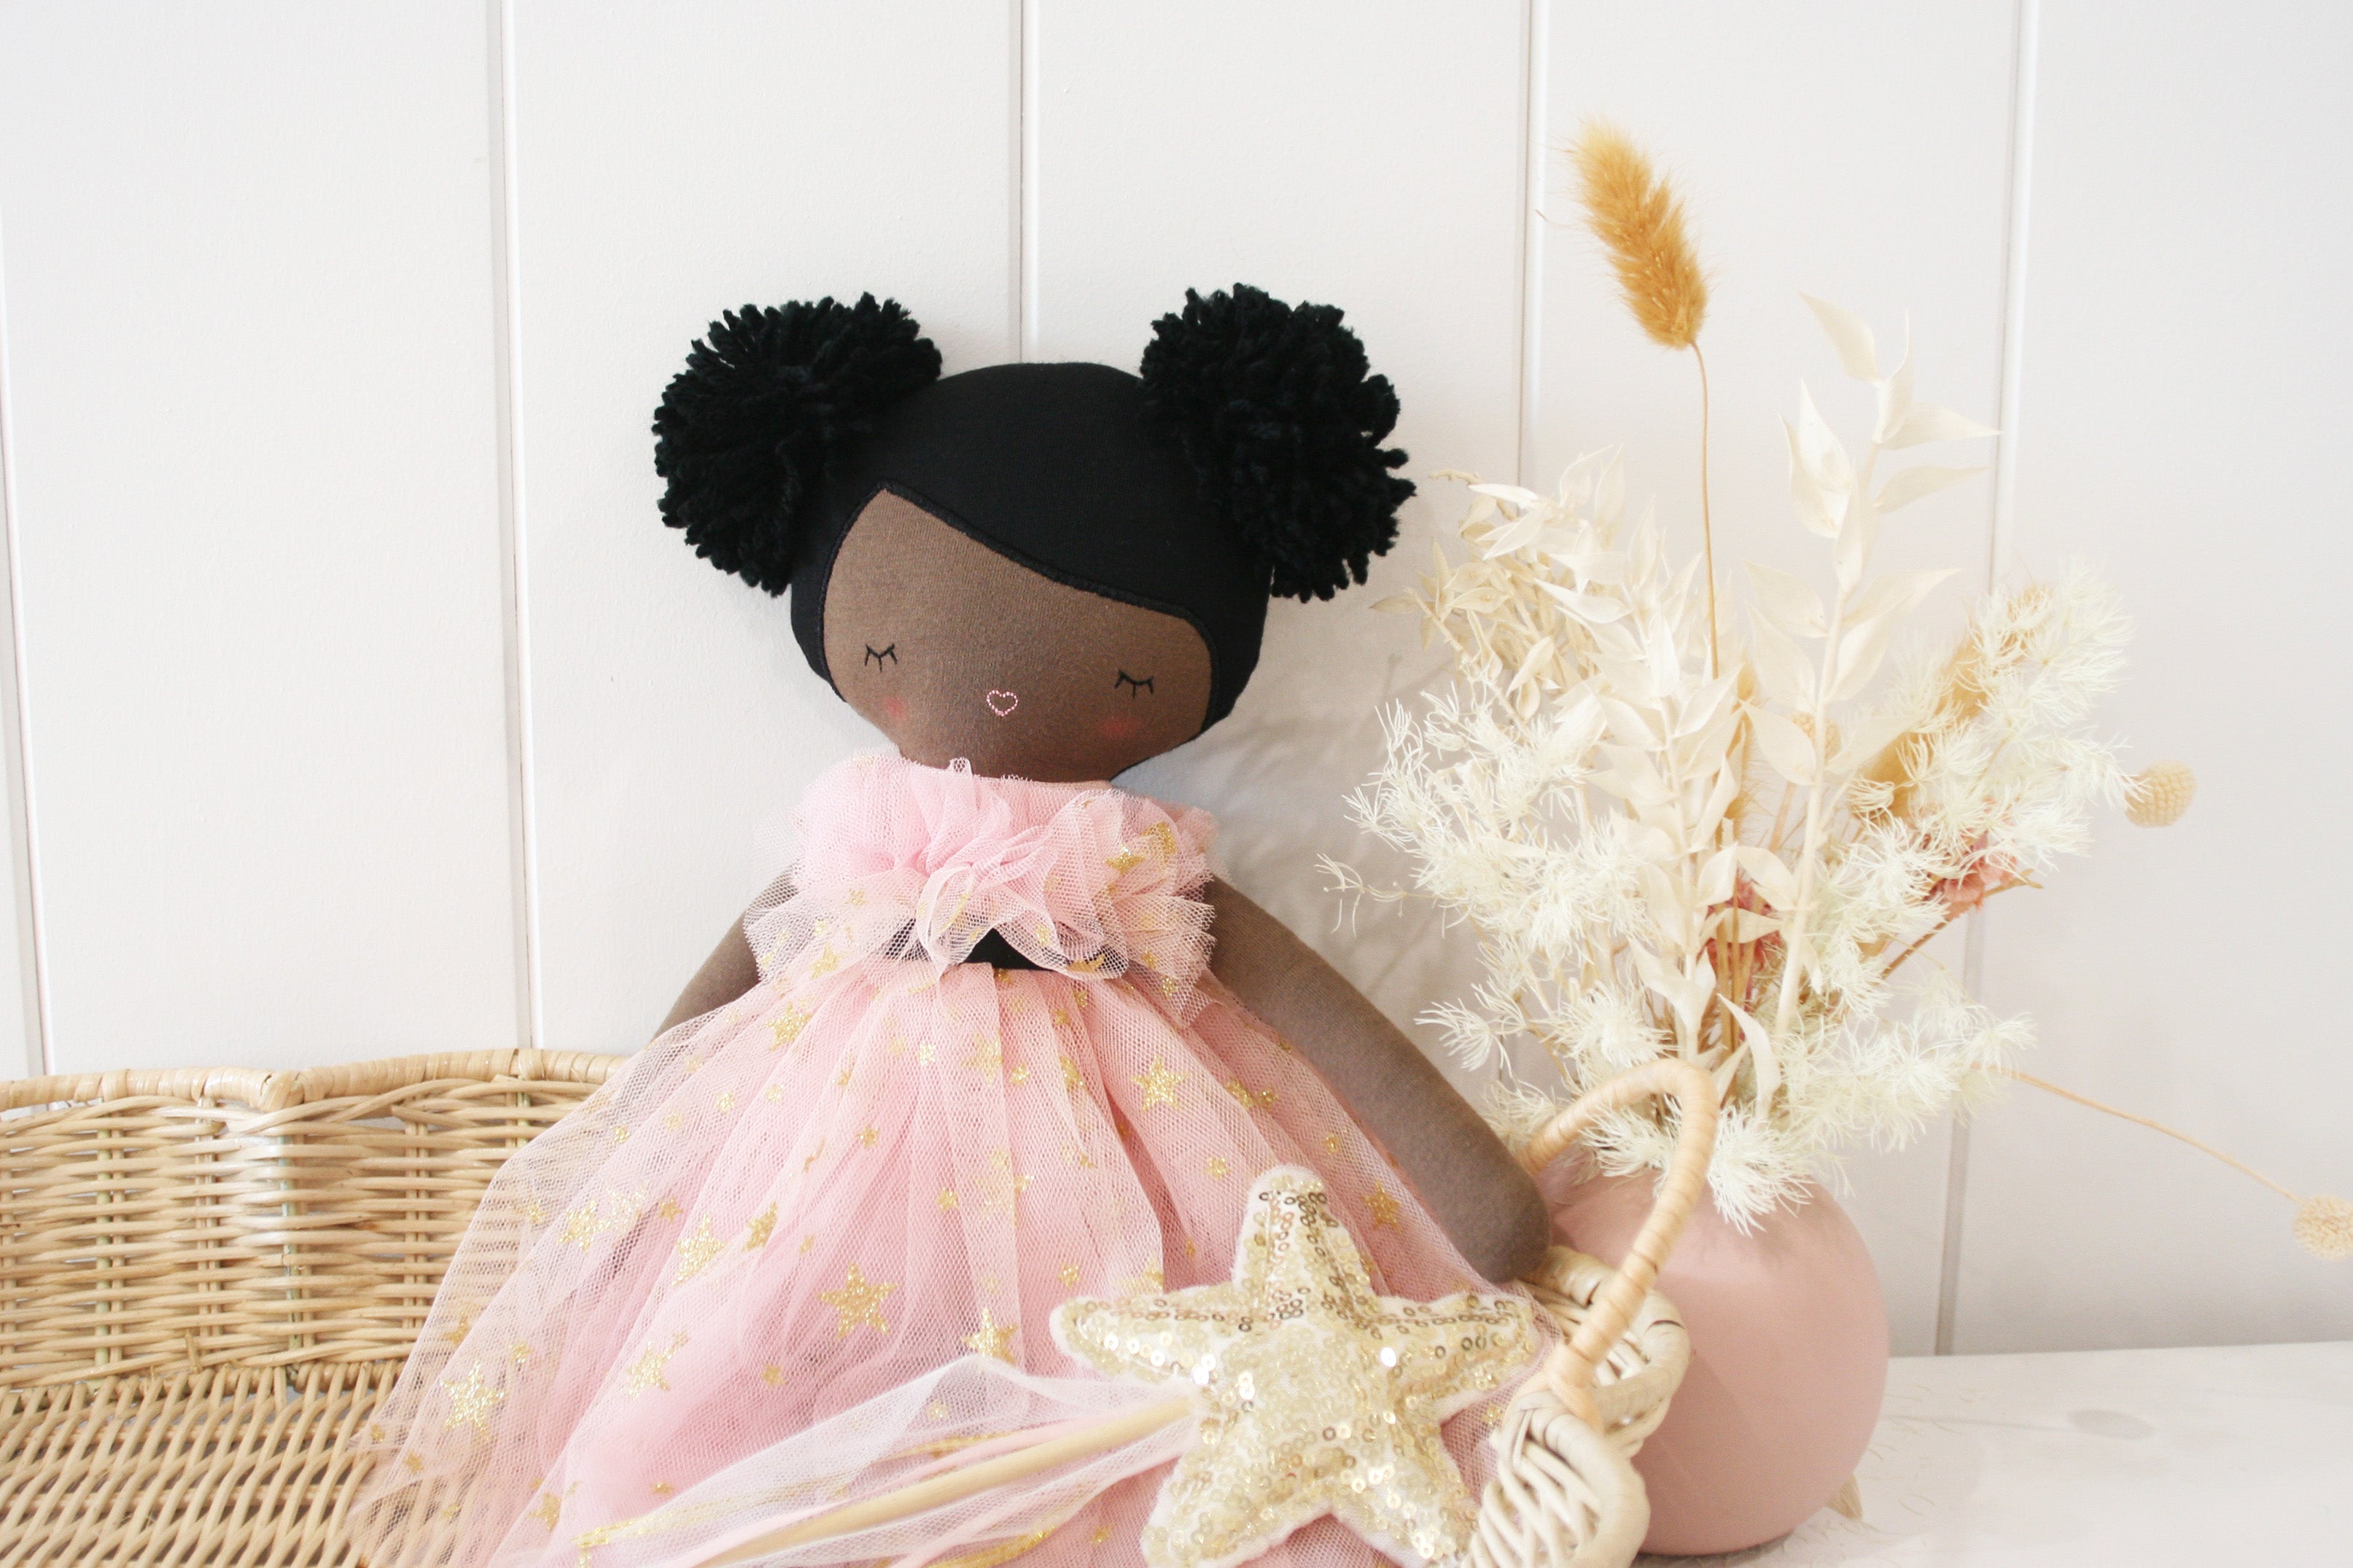 Alimrose Halle Ballerina Doll 48cm (Darker Brown & Ebony) - Twinkle Twinkle Little One